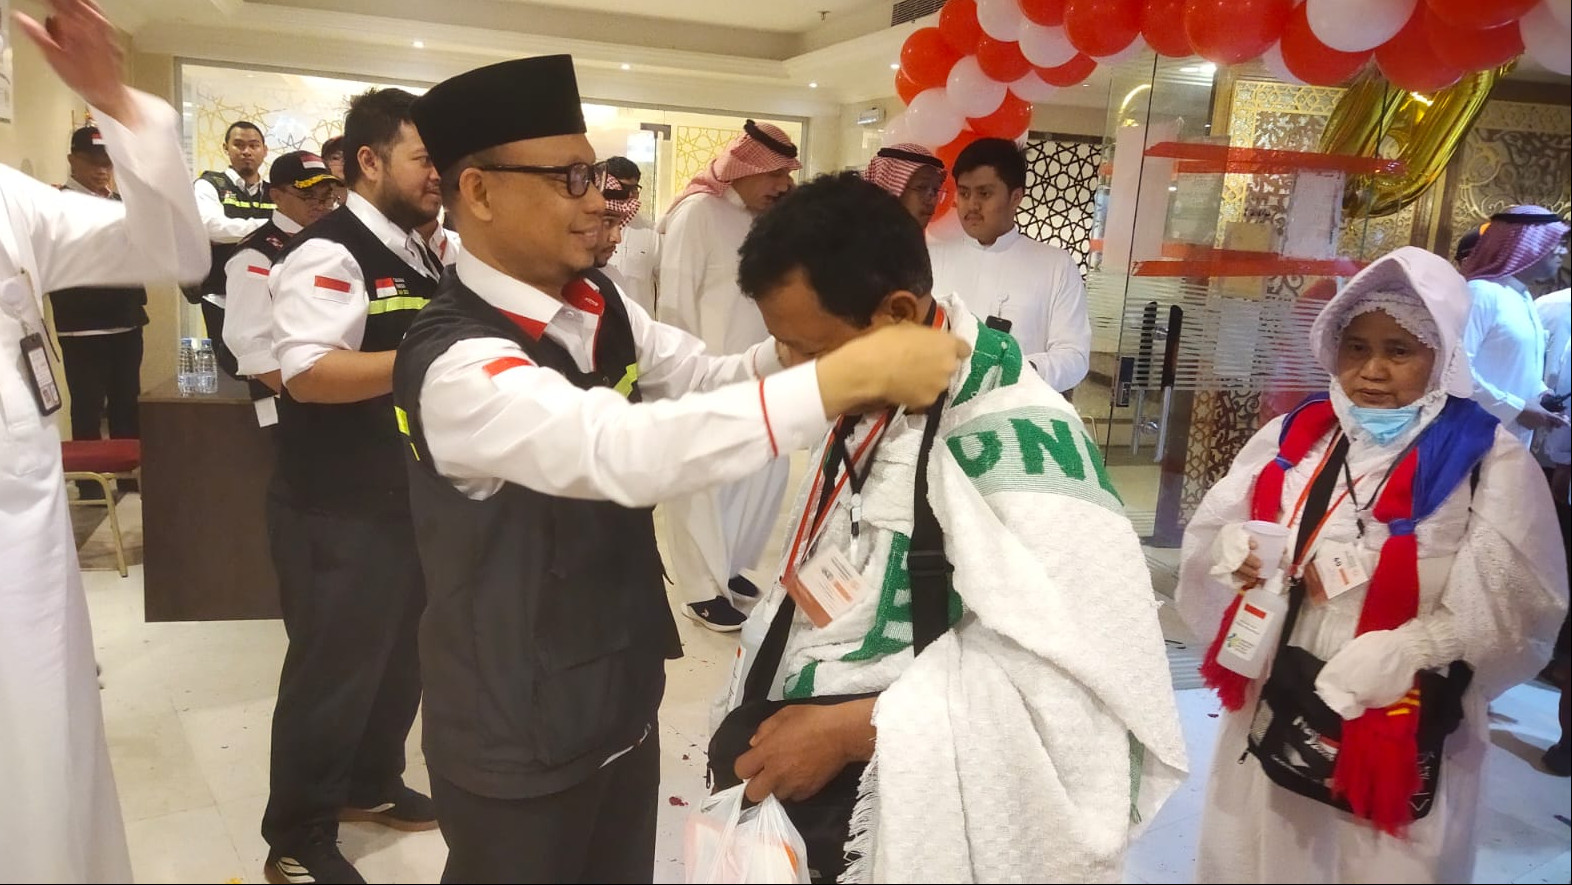 Ketua PPIH Subhan Cholid menyambut kedatangan jemaah haji kloter SOC 01 di Makkah